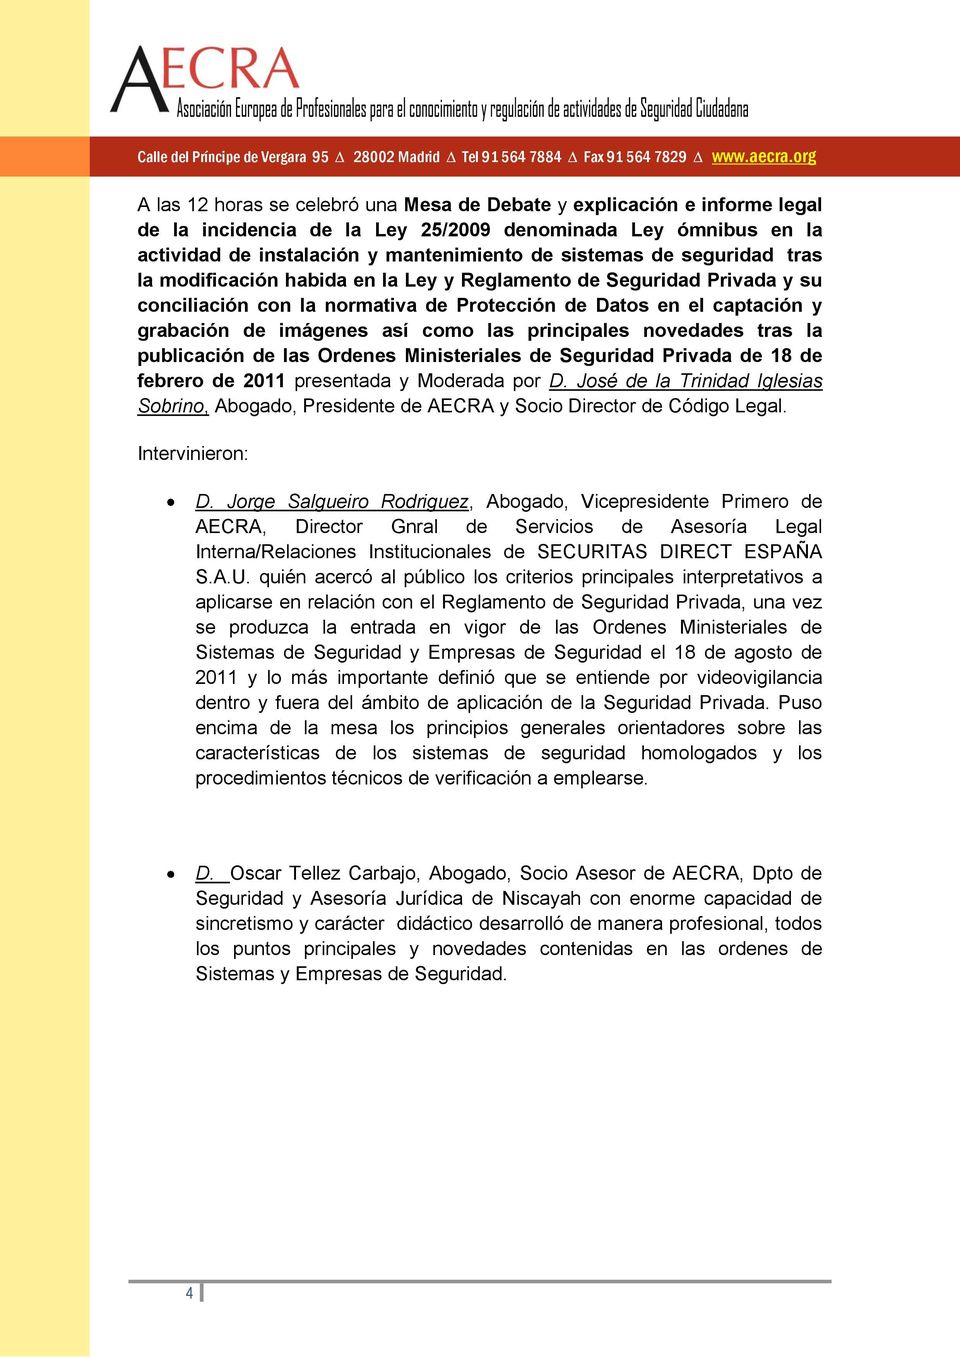 principales novedades tras la publicación de las Ordenes Ministeriales de Seguridad Privada de 18 de febrero de 2011 presentada y Moderada por D.